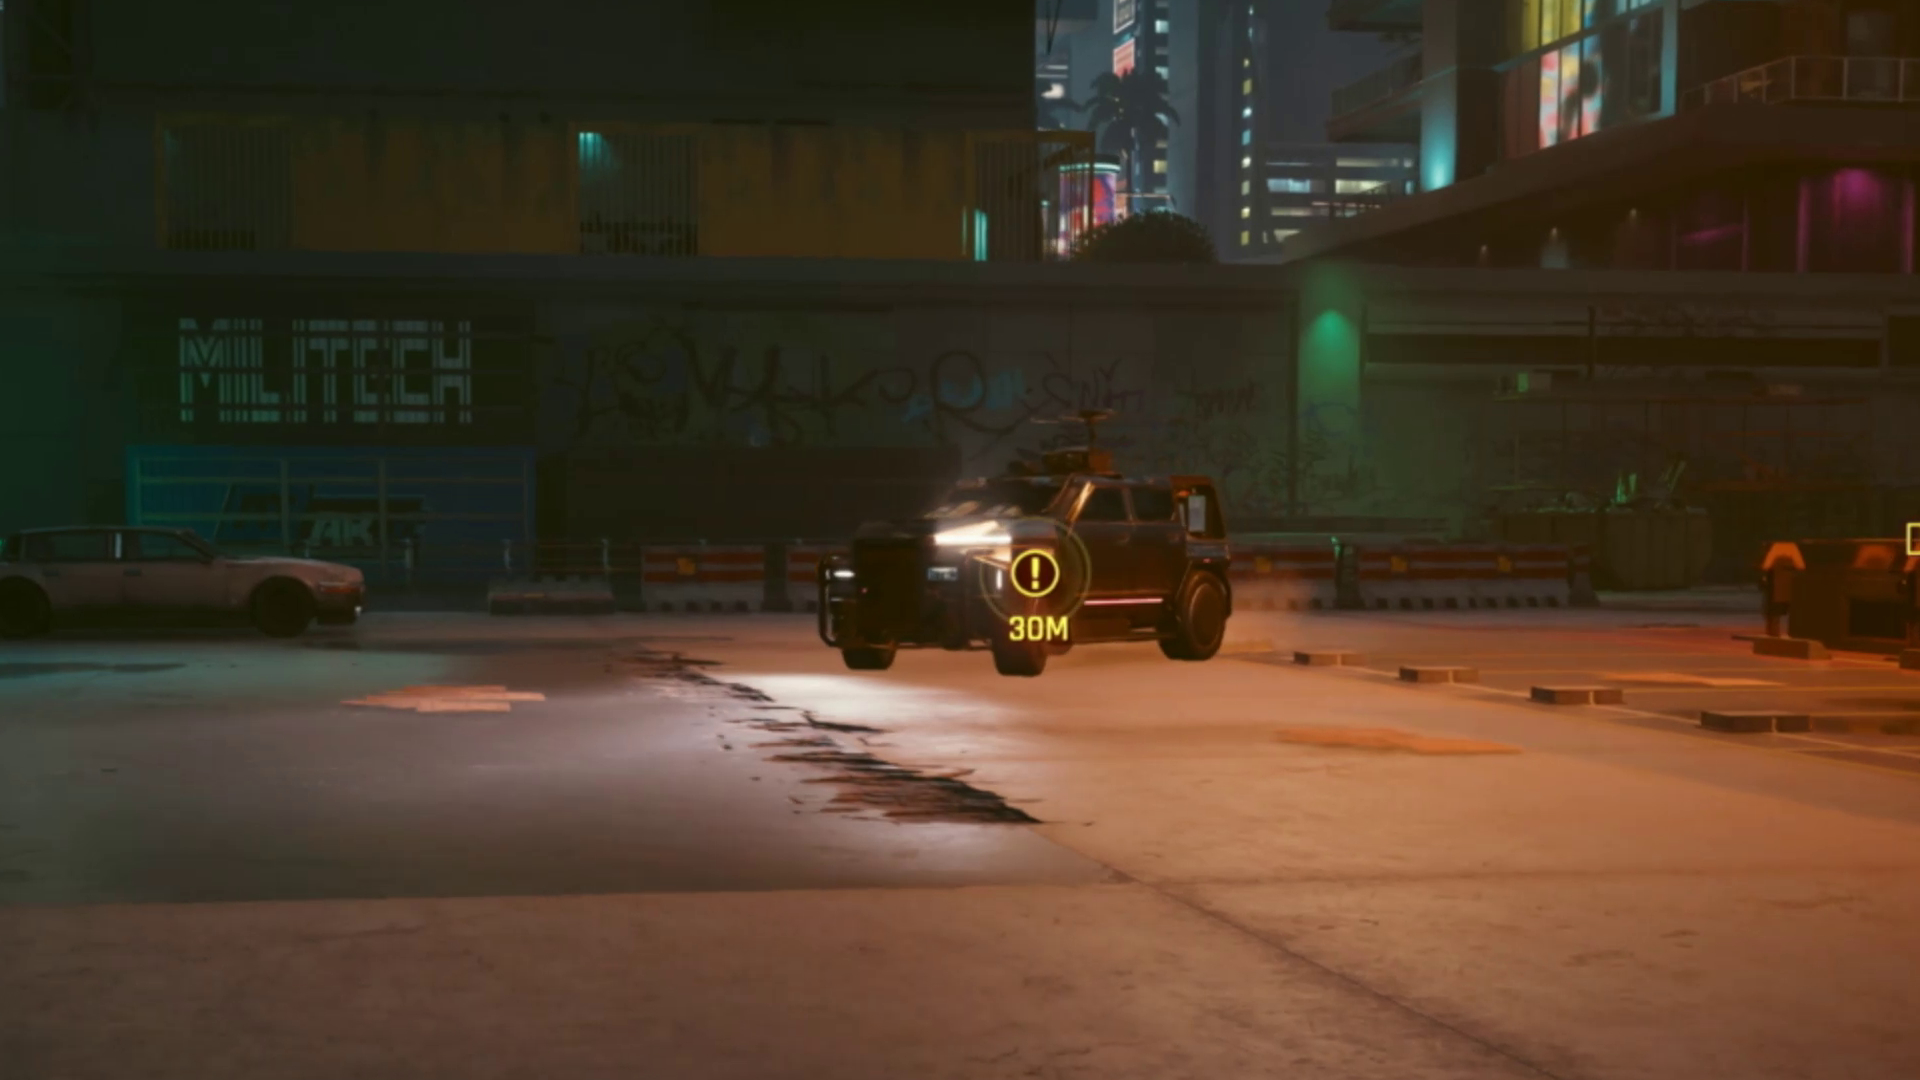 Ein Van auf einem Parkplatz mit Antenne auf dem DachScreenshot aus dem Spiel Cyberpunk 2077.